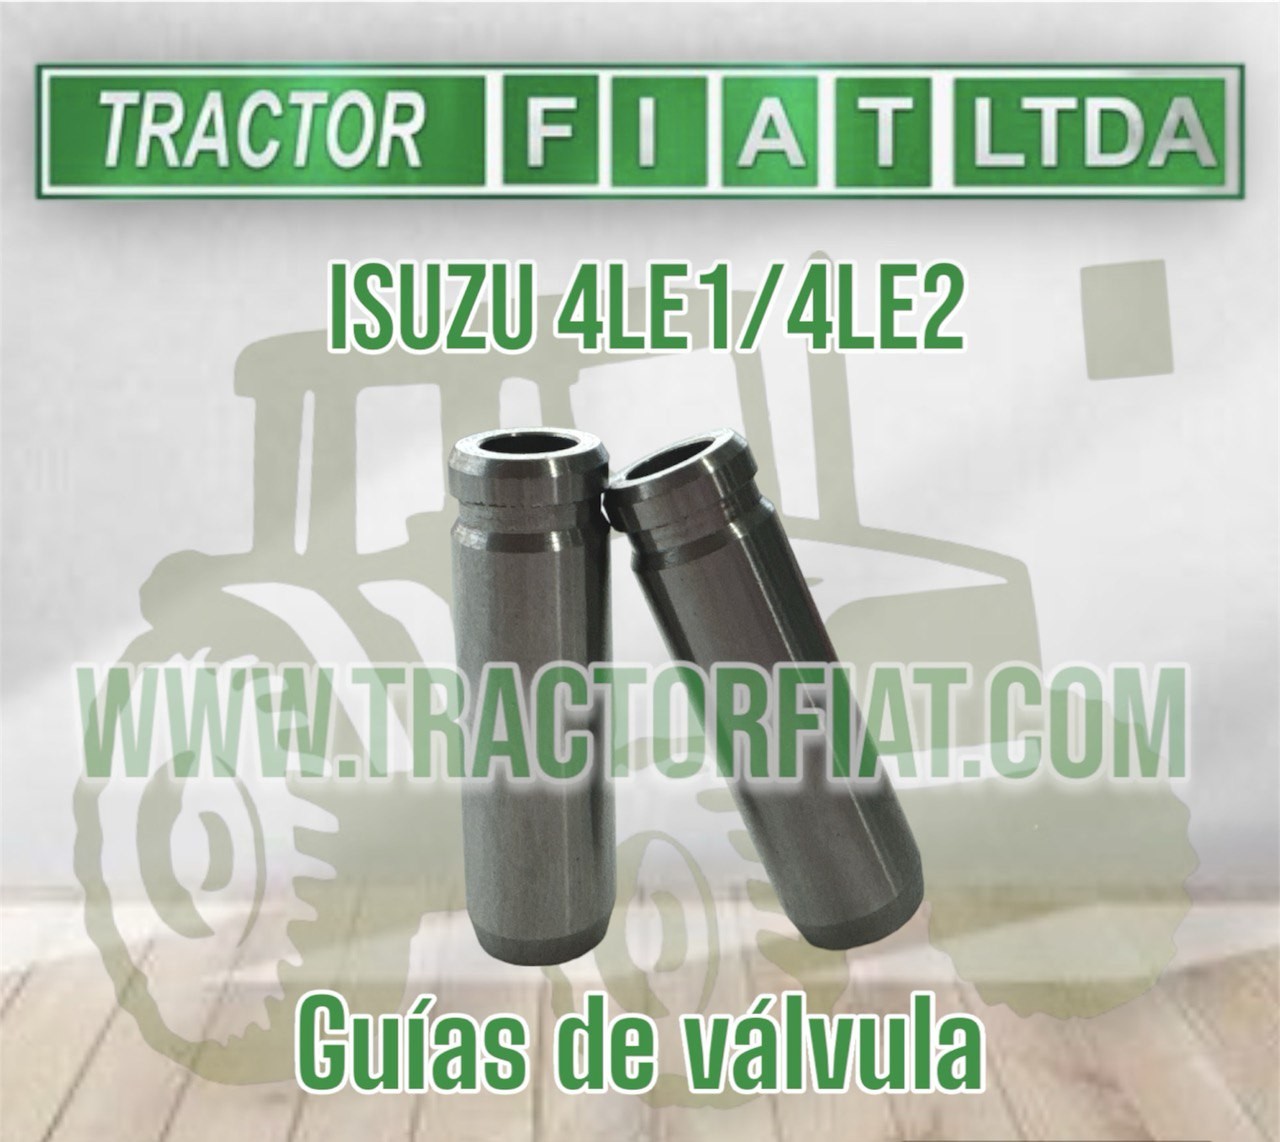 GUIAS DE VALVULA  - MOTOR ISUZU 4LE1/4LE2